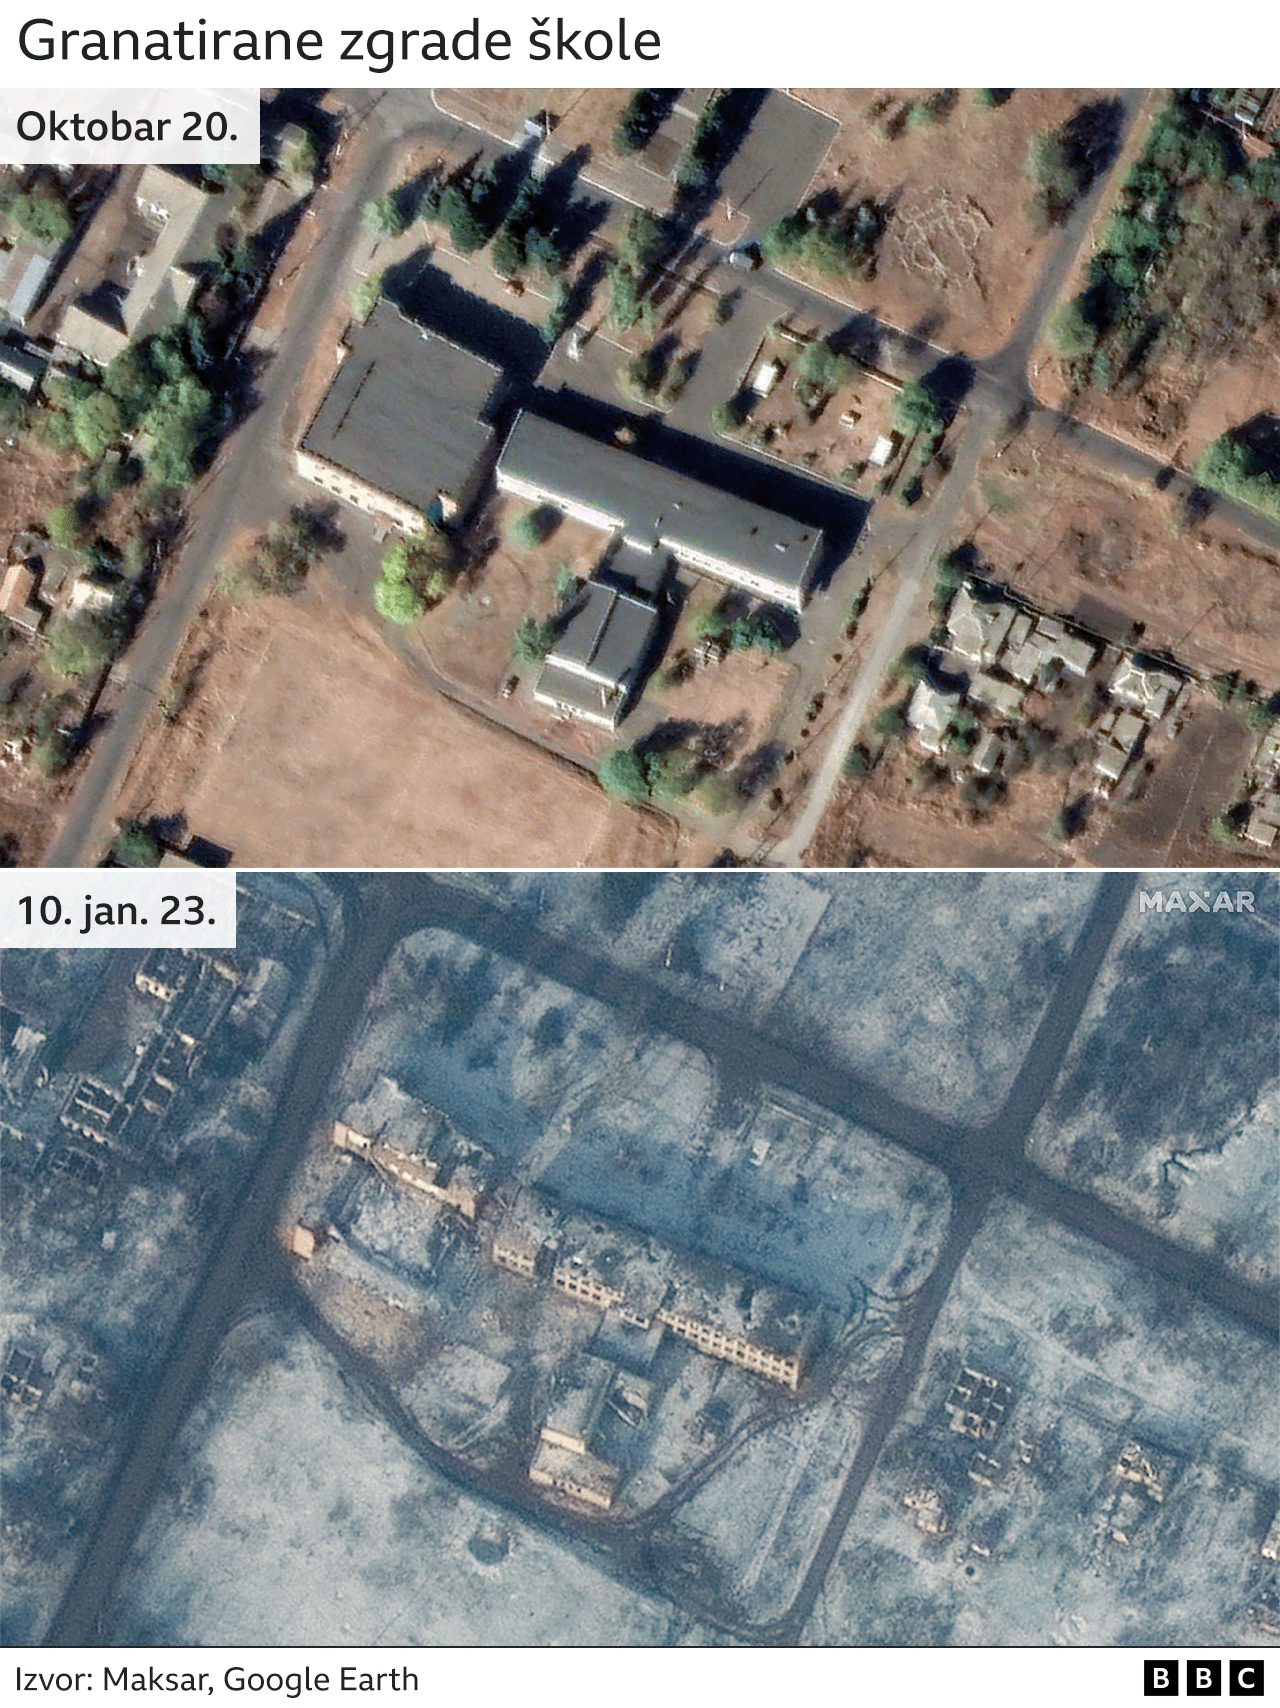 Zgrada škole pre i posle granatiranja